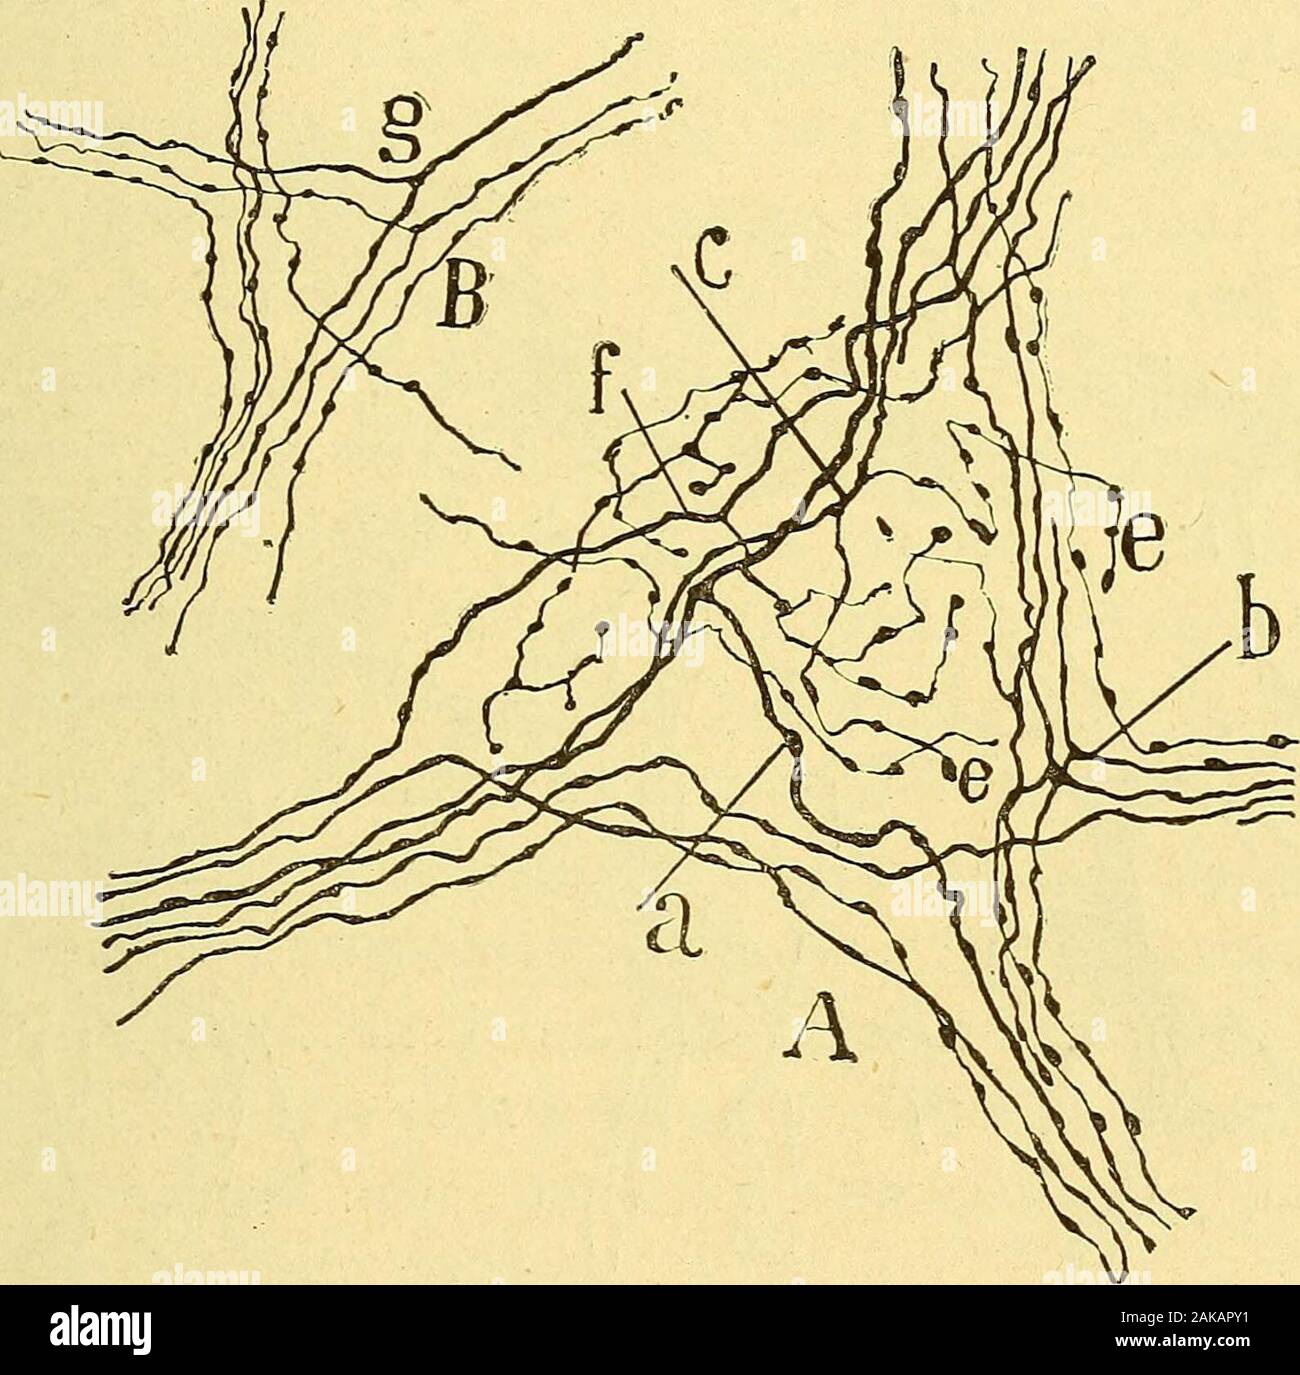 Les nouvelles idées sur la structure du système nerveux : chez l'homme et chez les vertébrés . stin grcle du cobaye. — Figure demi-schématiquedestinée à montrer la totalité des plexus et des ganglions de lintestin. /l couche des fibres musculaires longitudinales; B couche des libres musculairescirculaires; C tissu conjonctif sous-muqueux, avec le plexus et les ganglions deMeissner; D couche des glandes de Lieberkuhn ; E villosités; — a plexus dAuer-bach ; g ganglion dAuerbach ; b plexus musculaire profond coupe en travers ;c fascicules du plexus de Meissner: e faisceaux du plexus périglandulai Stock Photo